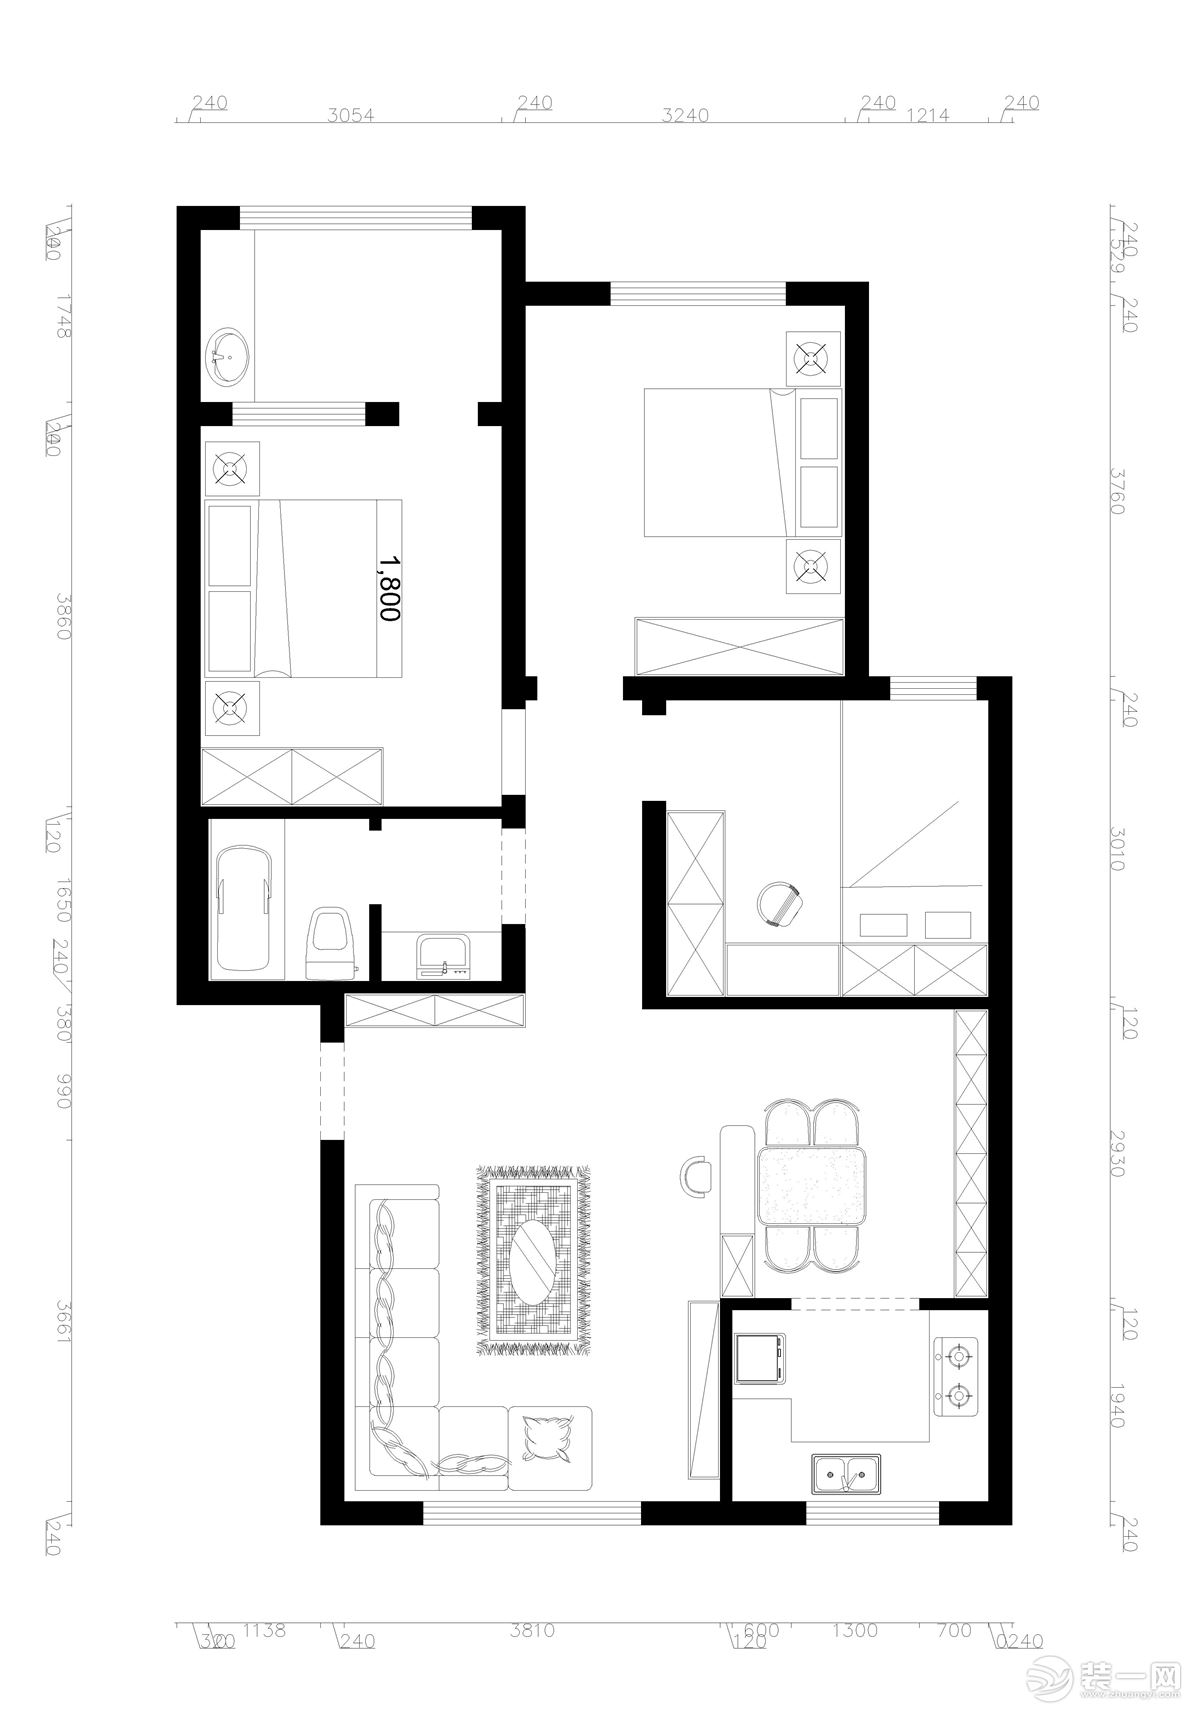 三室两厅一厨一卫的平面户型方案